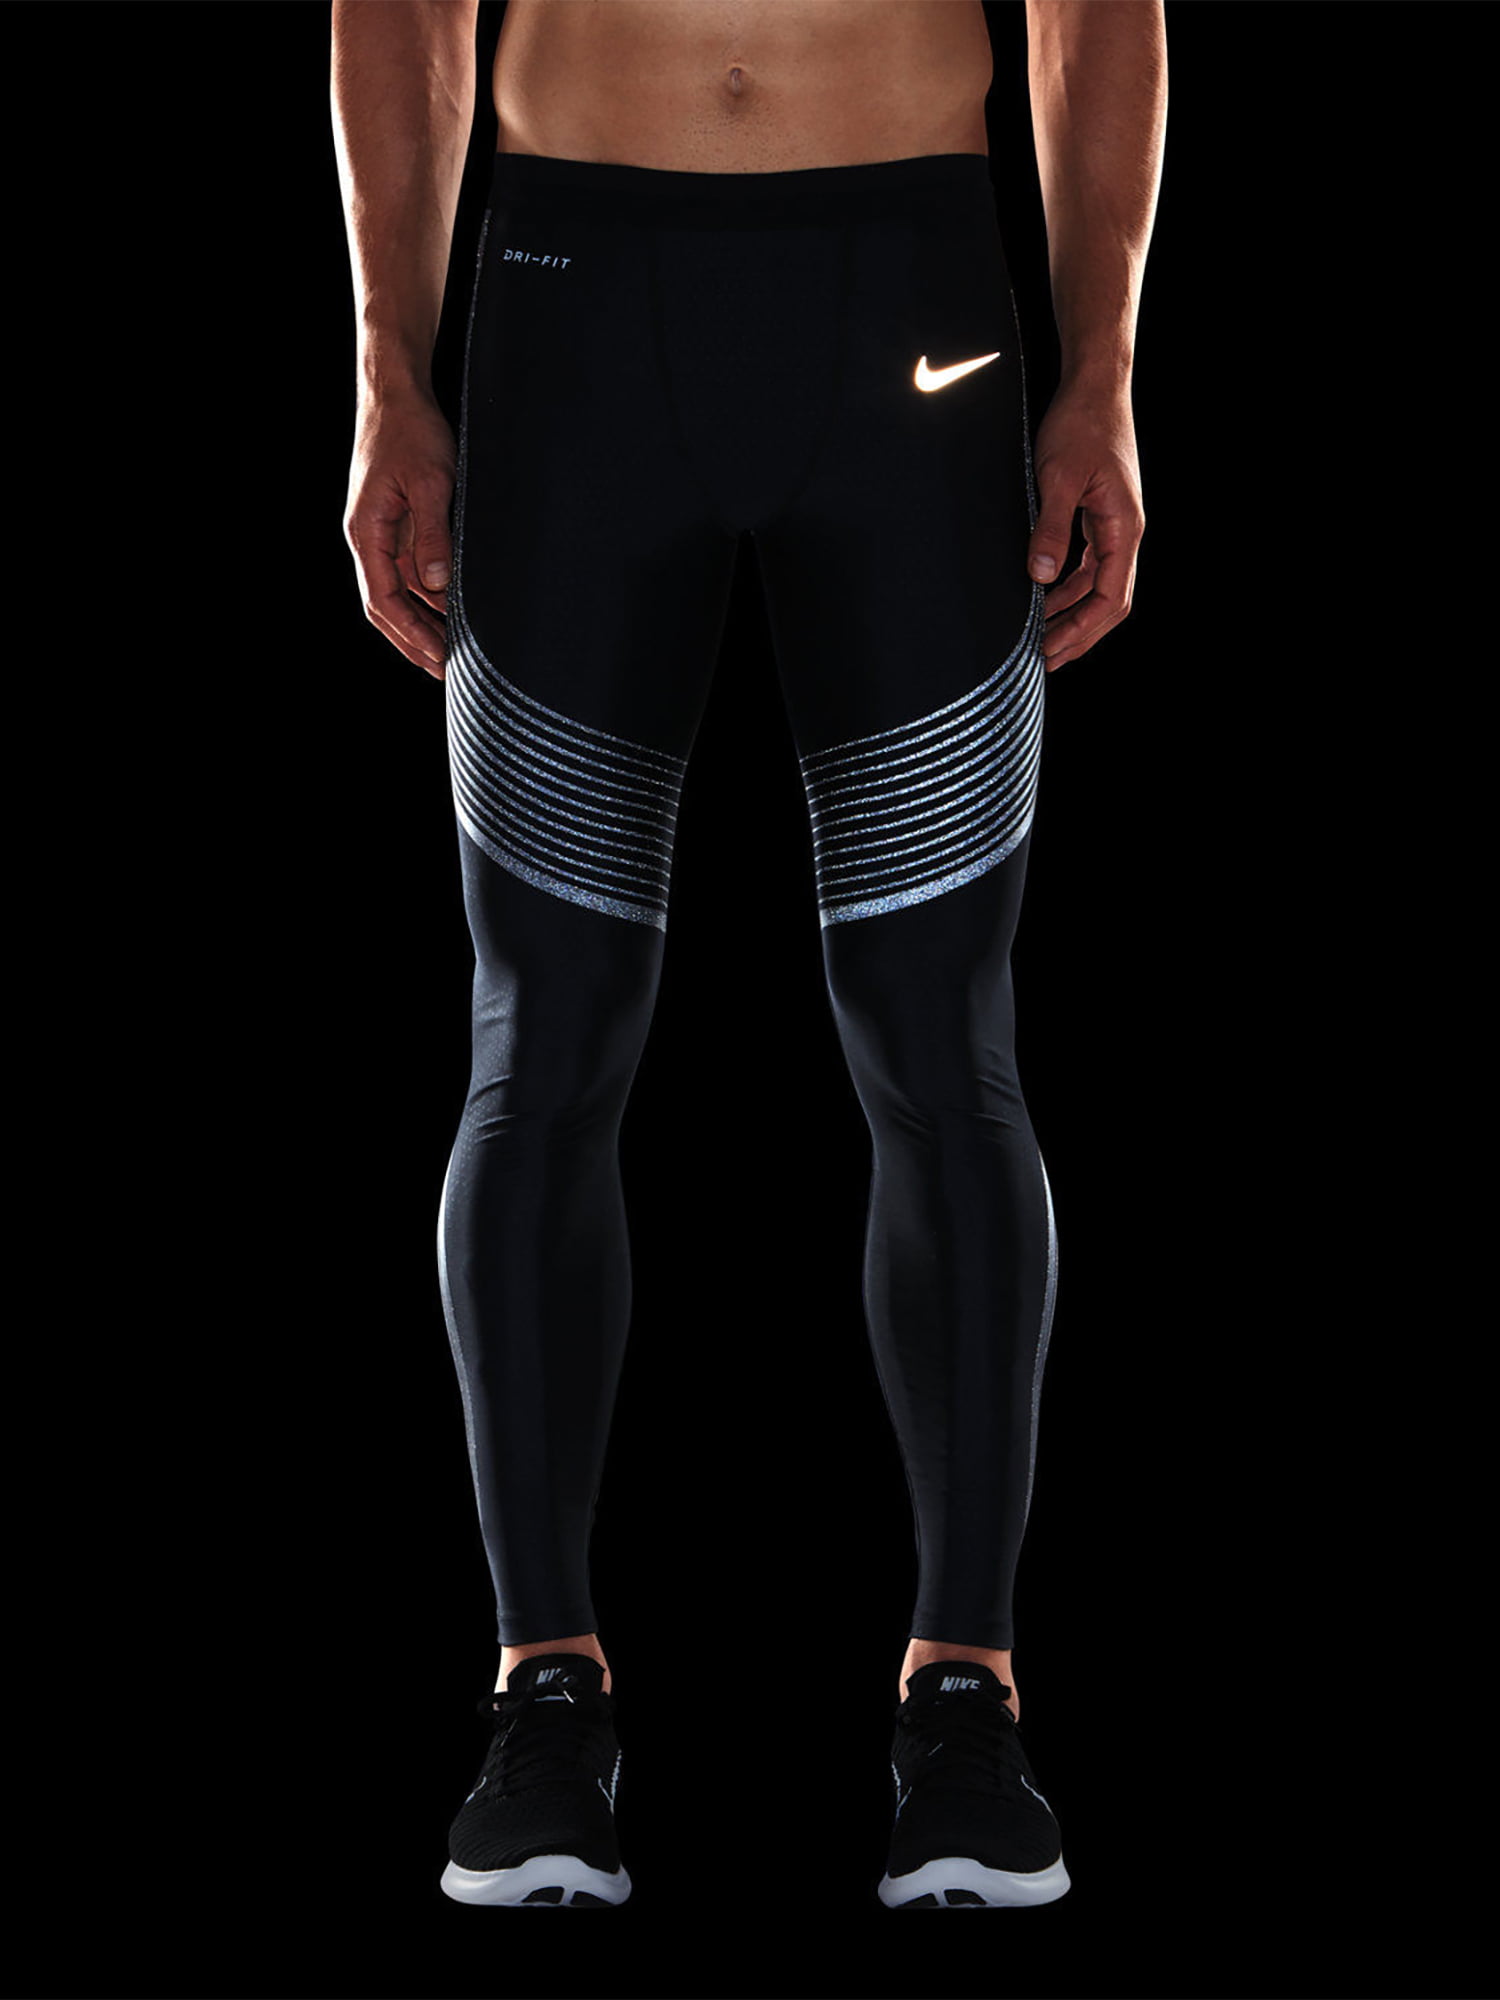 plan ubrugt syv Nike Power Speed Flash Men's Running Tights, Black/Reflective Silver,  Medium - Walmart.com